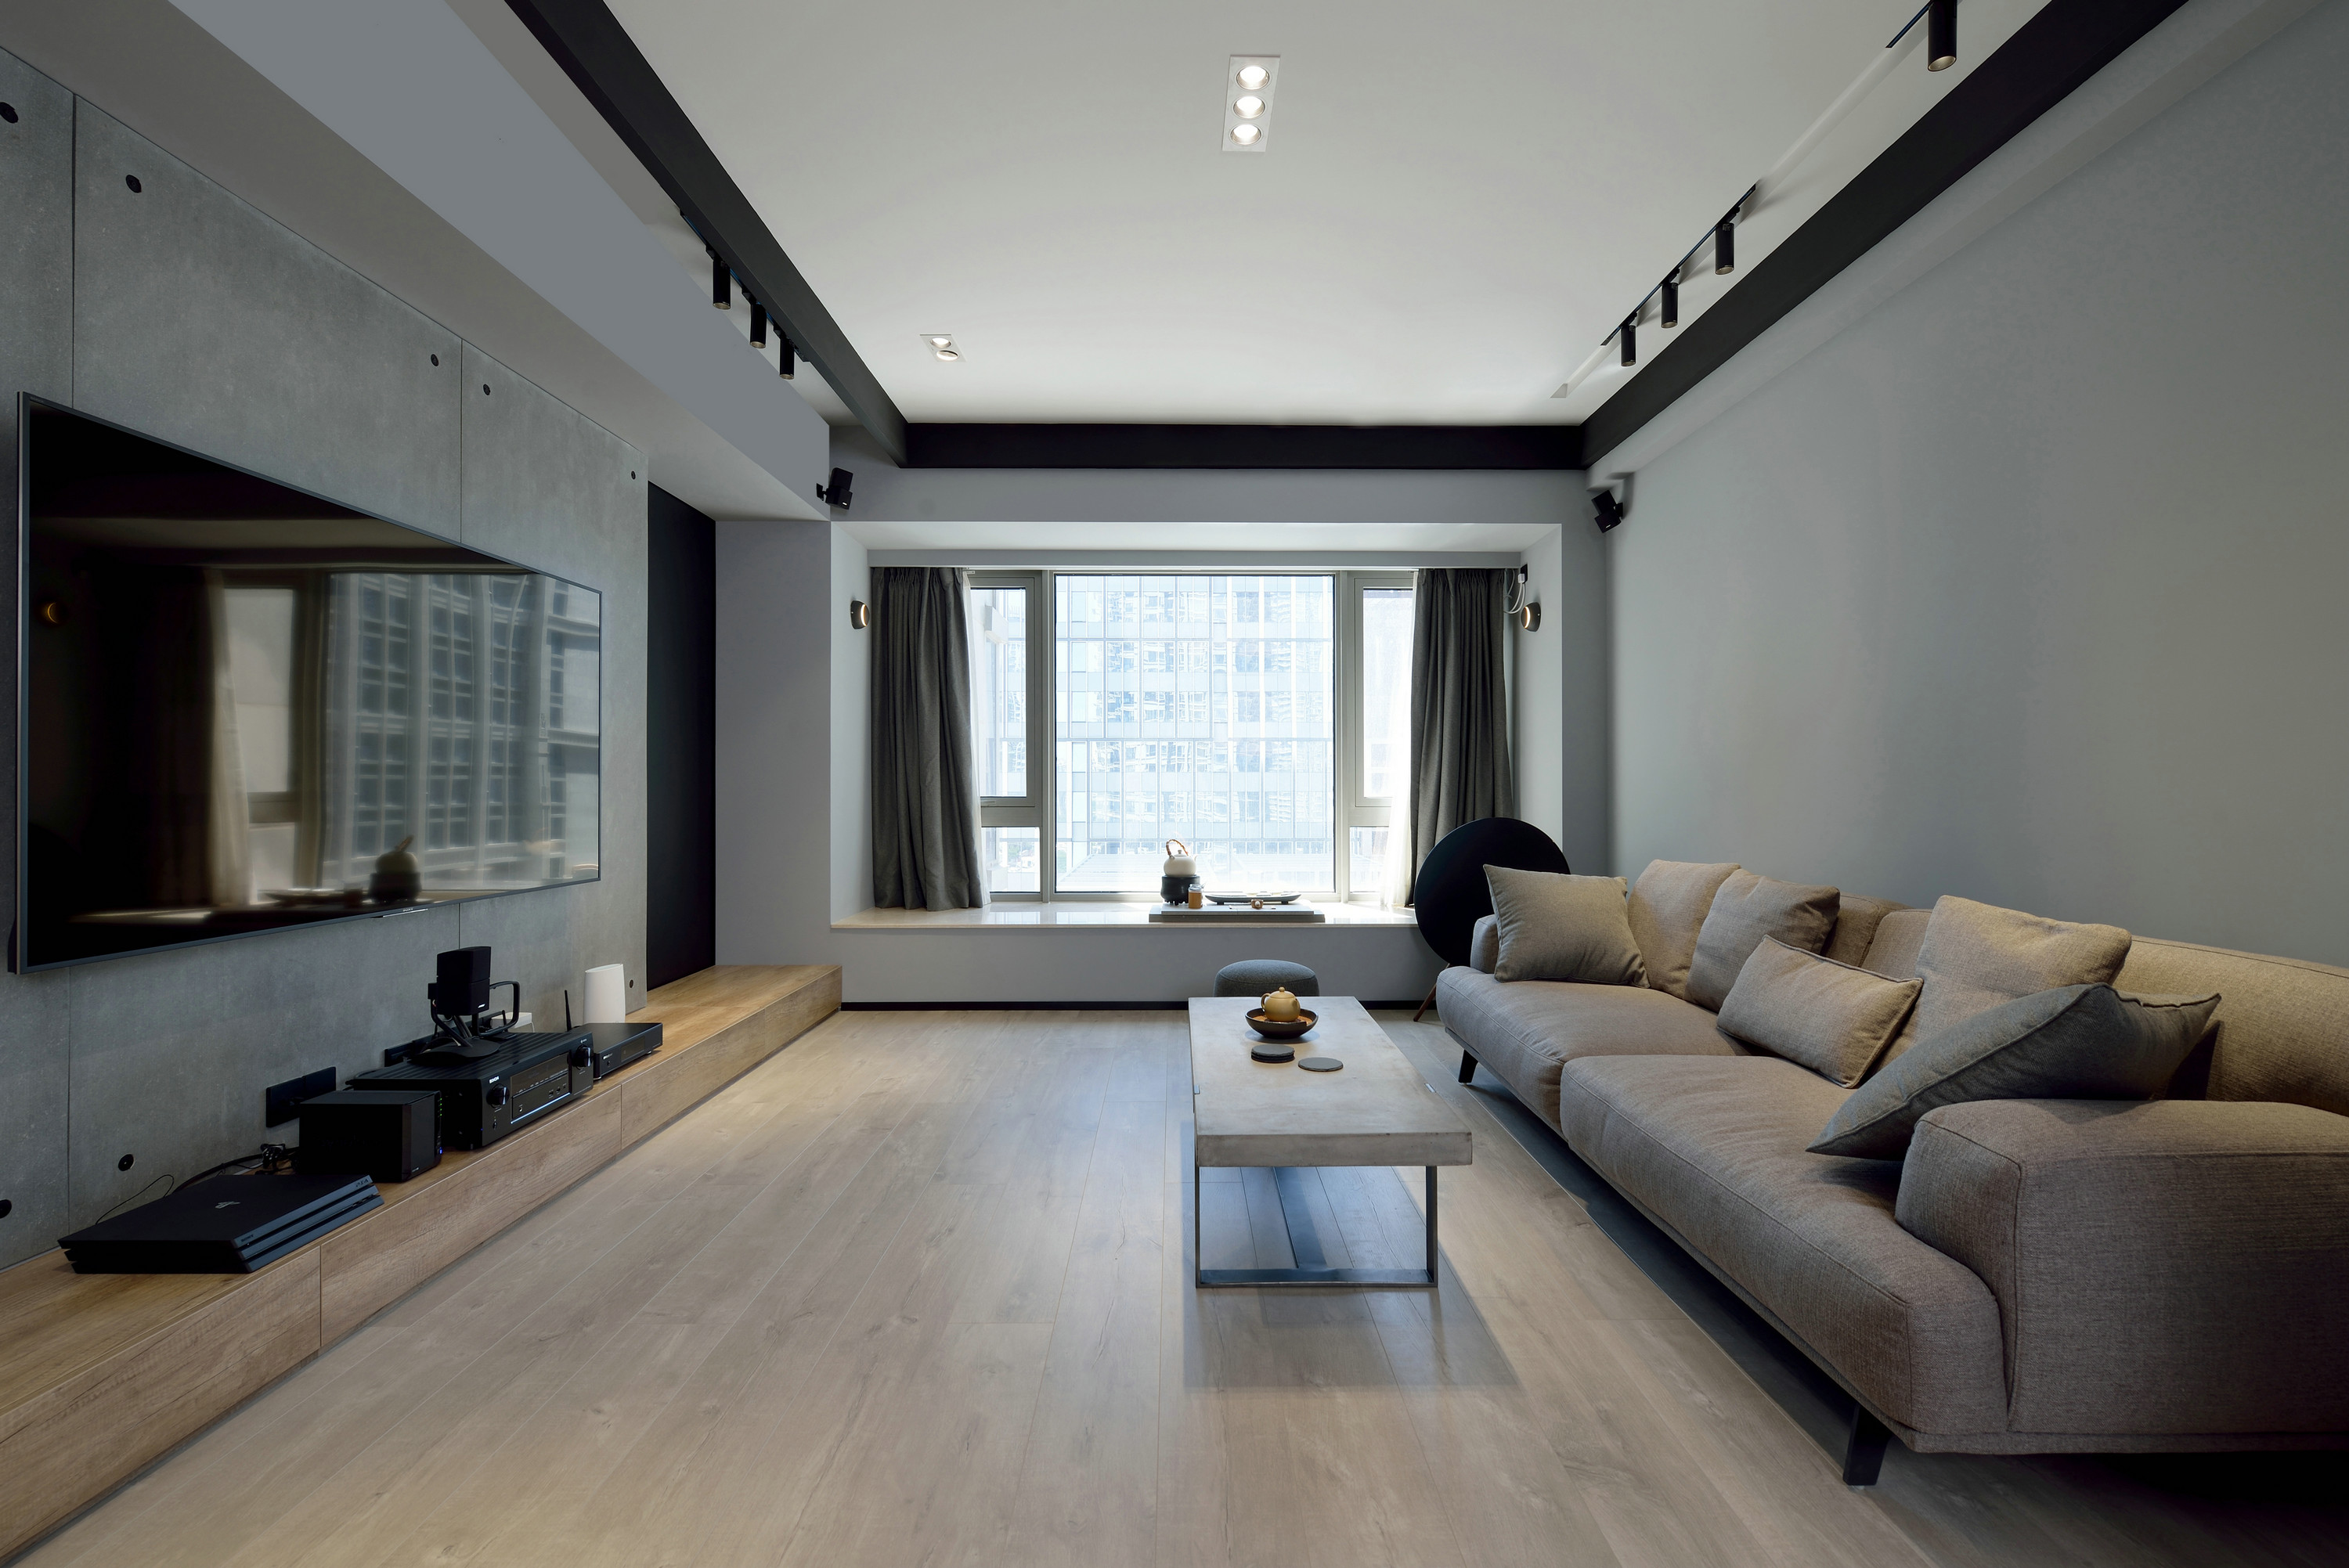 客厅布艺沙发塑造空间轮廓，地面木纹砖的温馨质地提升了空间的舒适感。